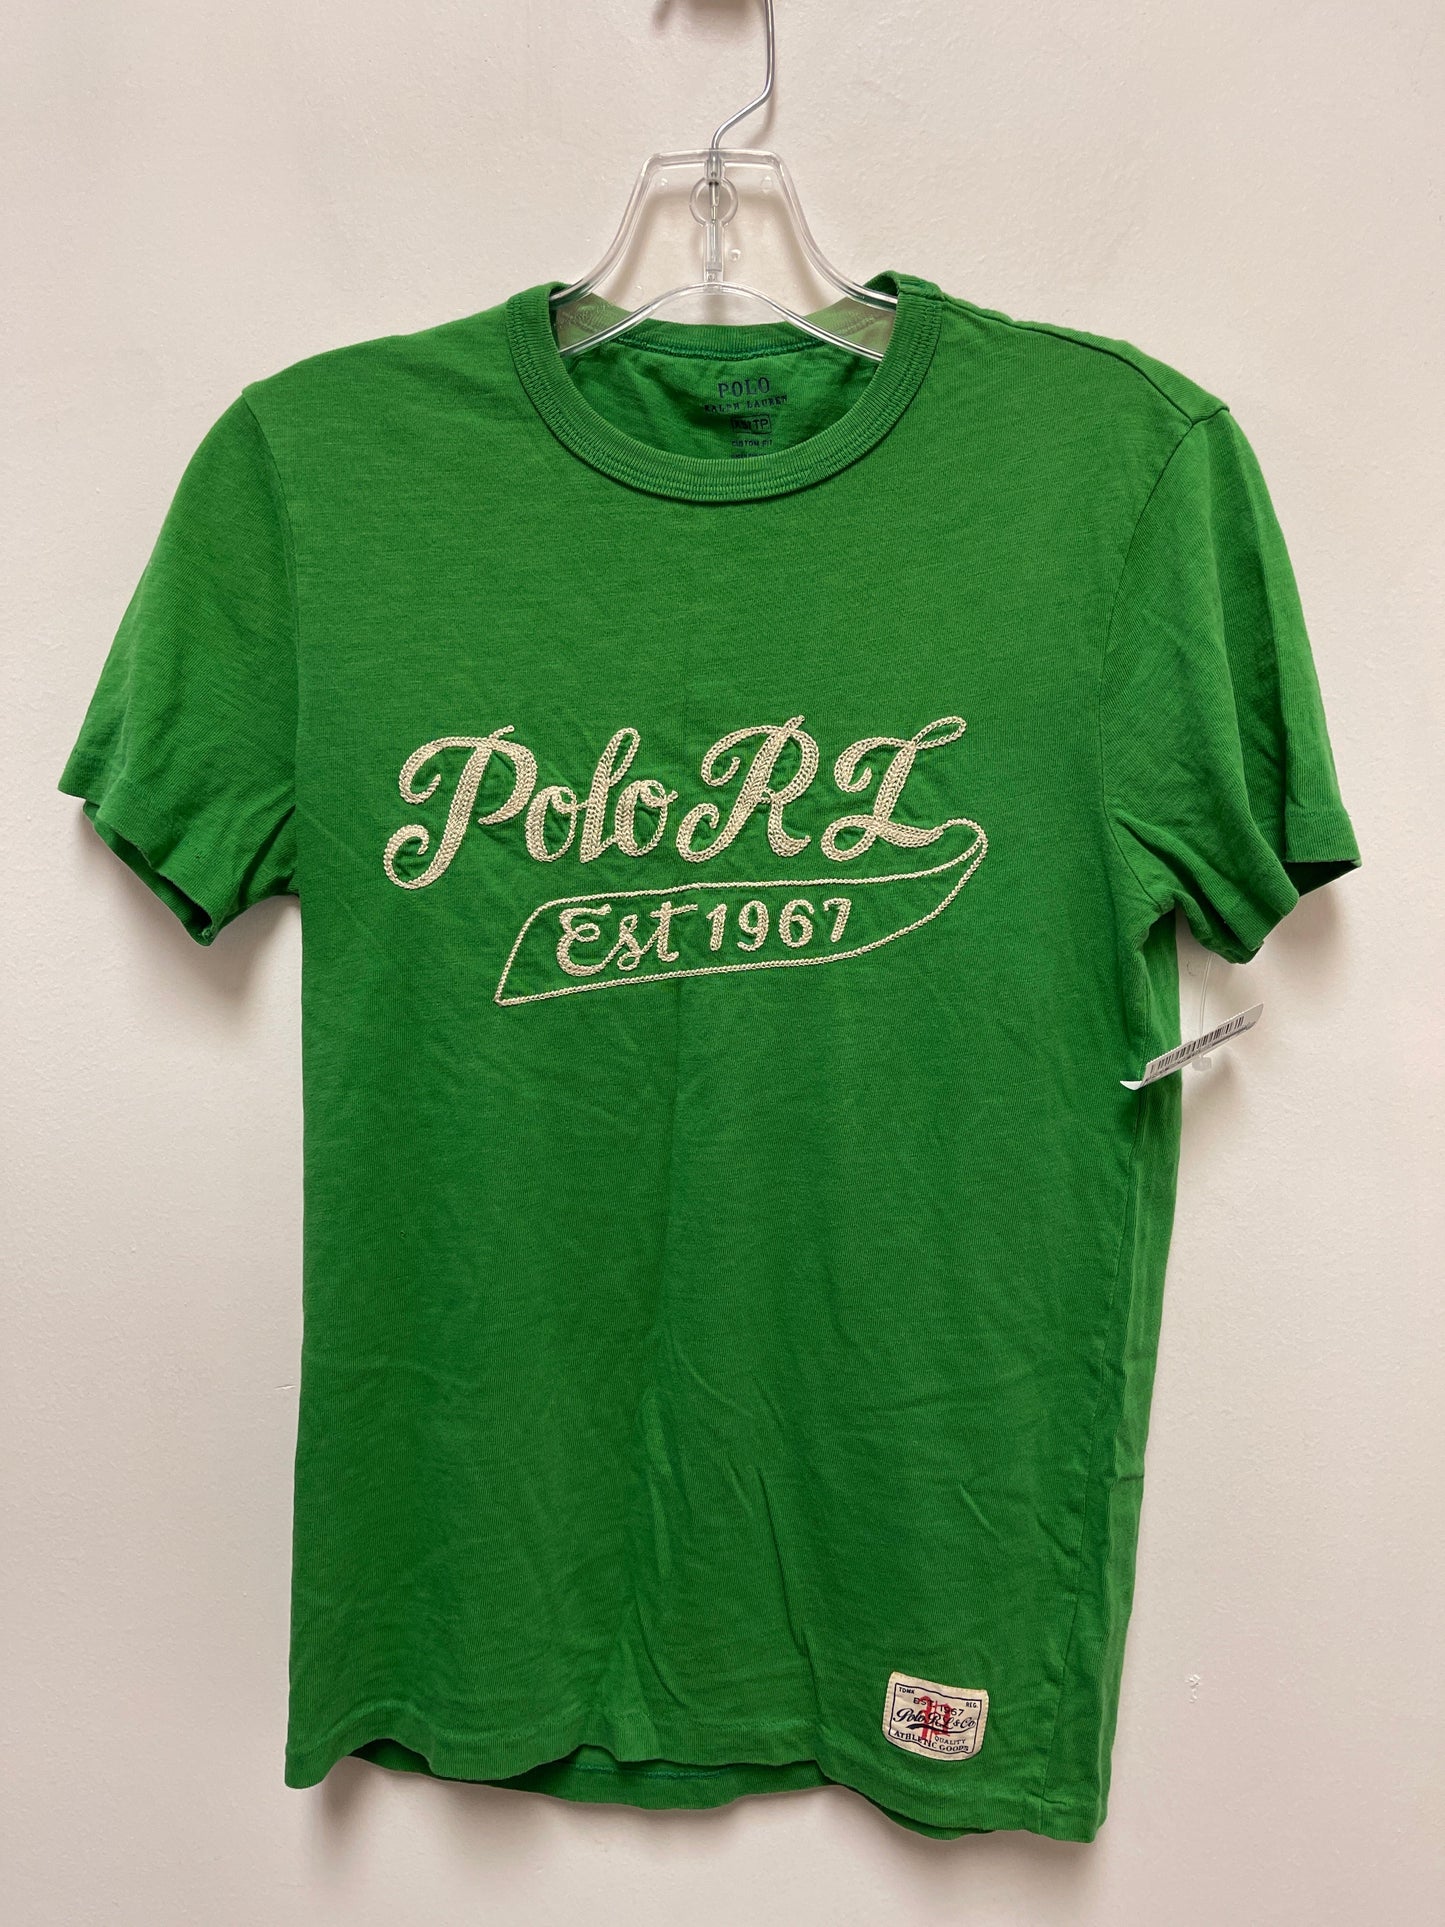 Green Top Short Sleeve Polo Ralph Lauren, Size Xs